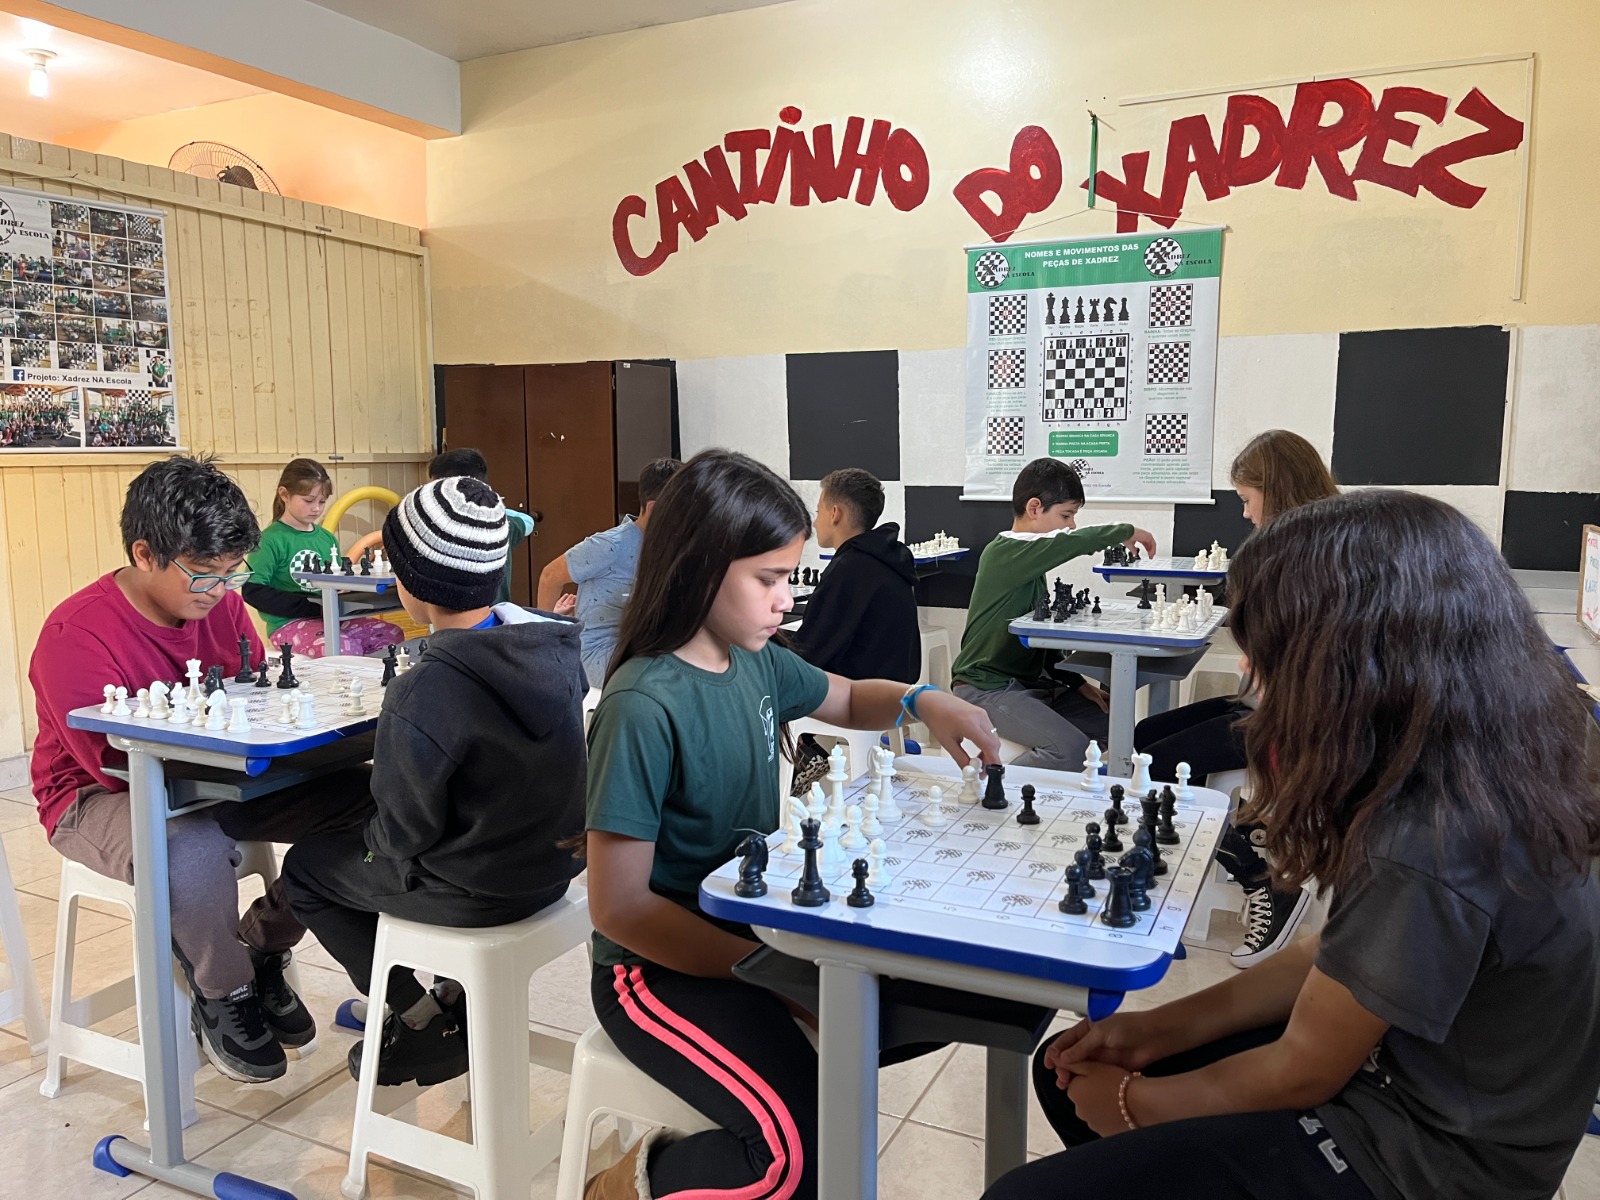 Clube de Xadrez do Campus Rolante já está em atividade - Campus